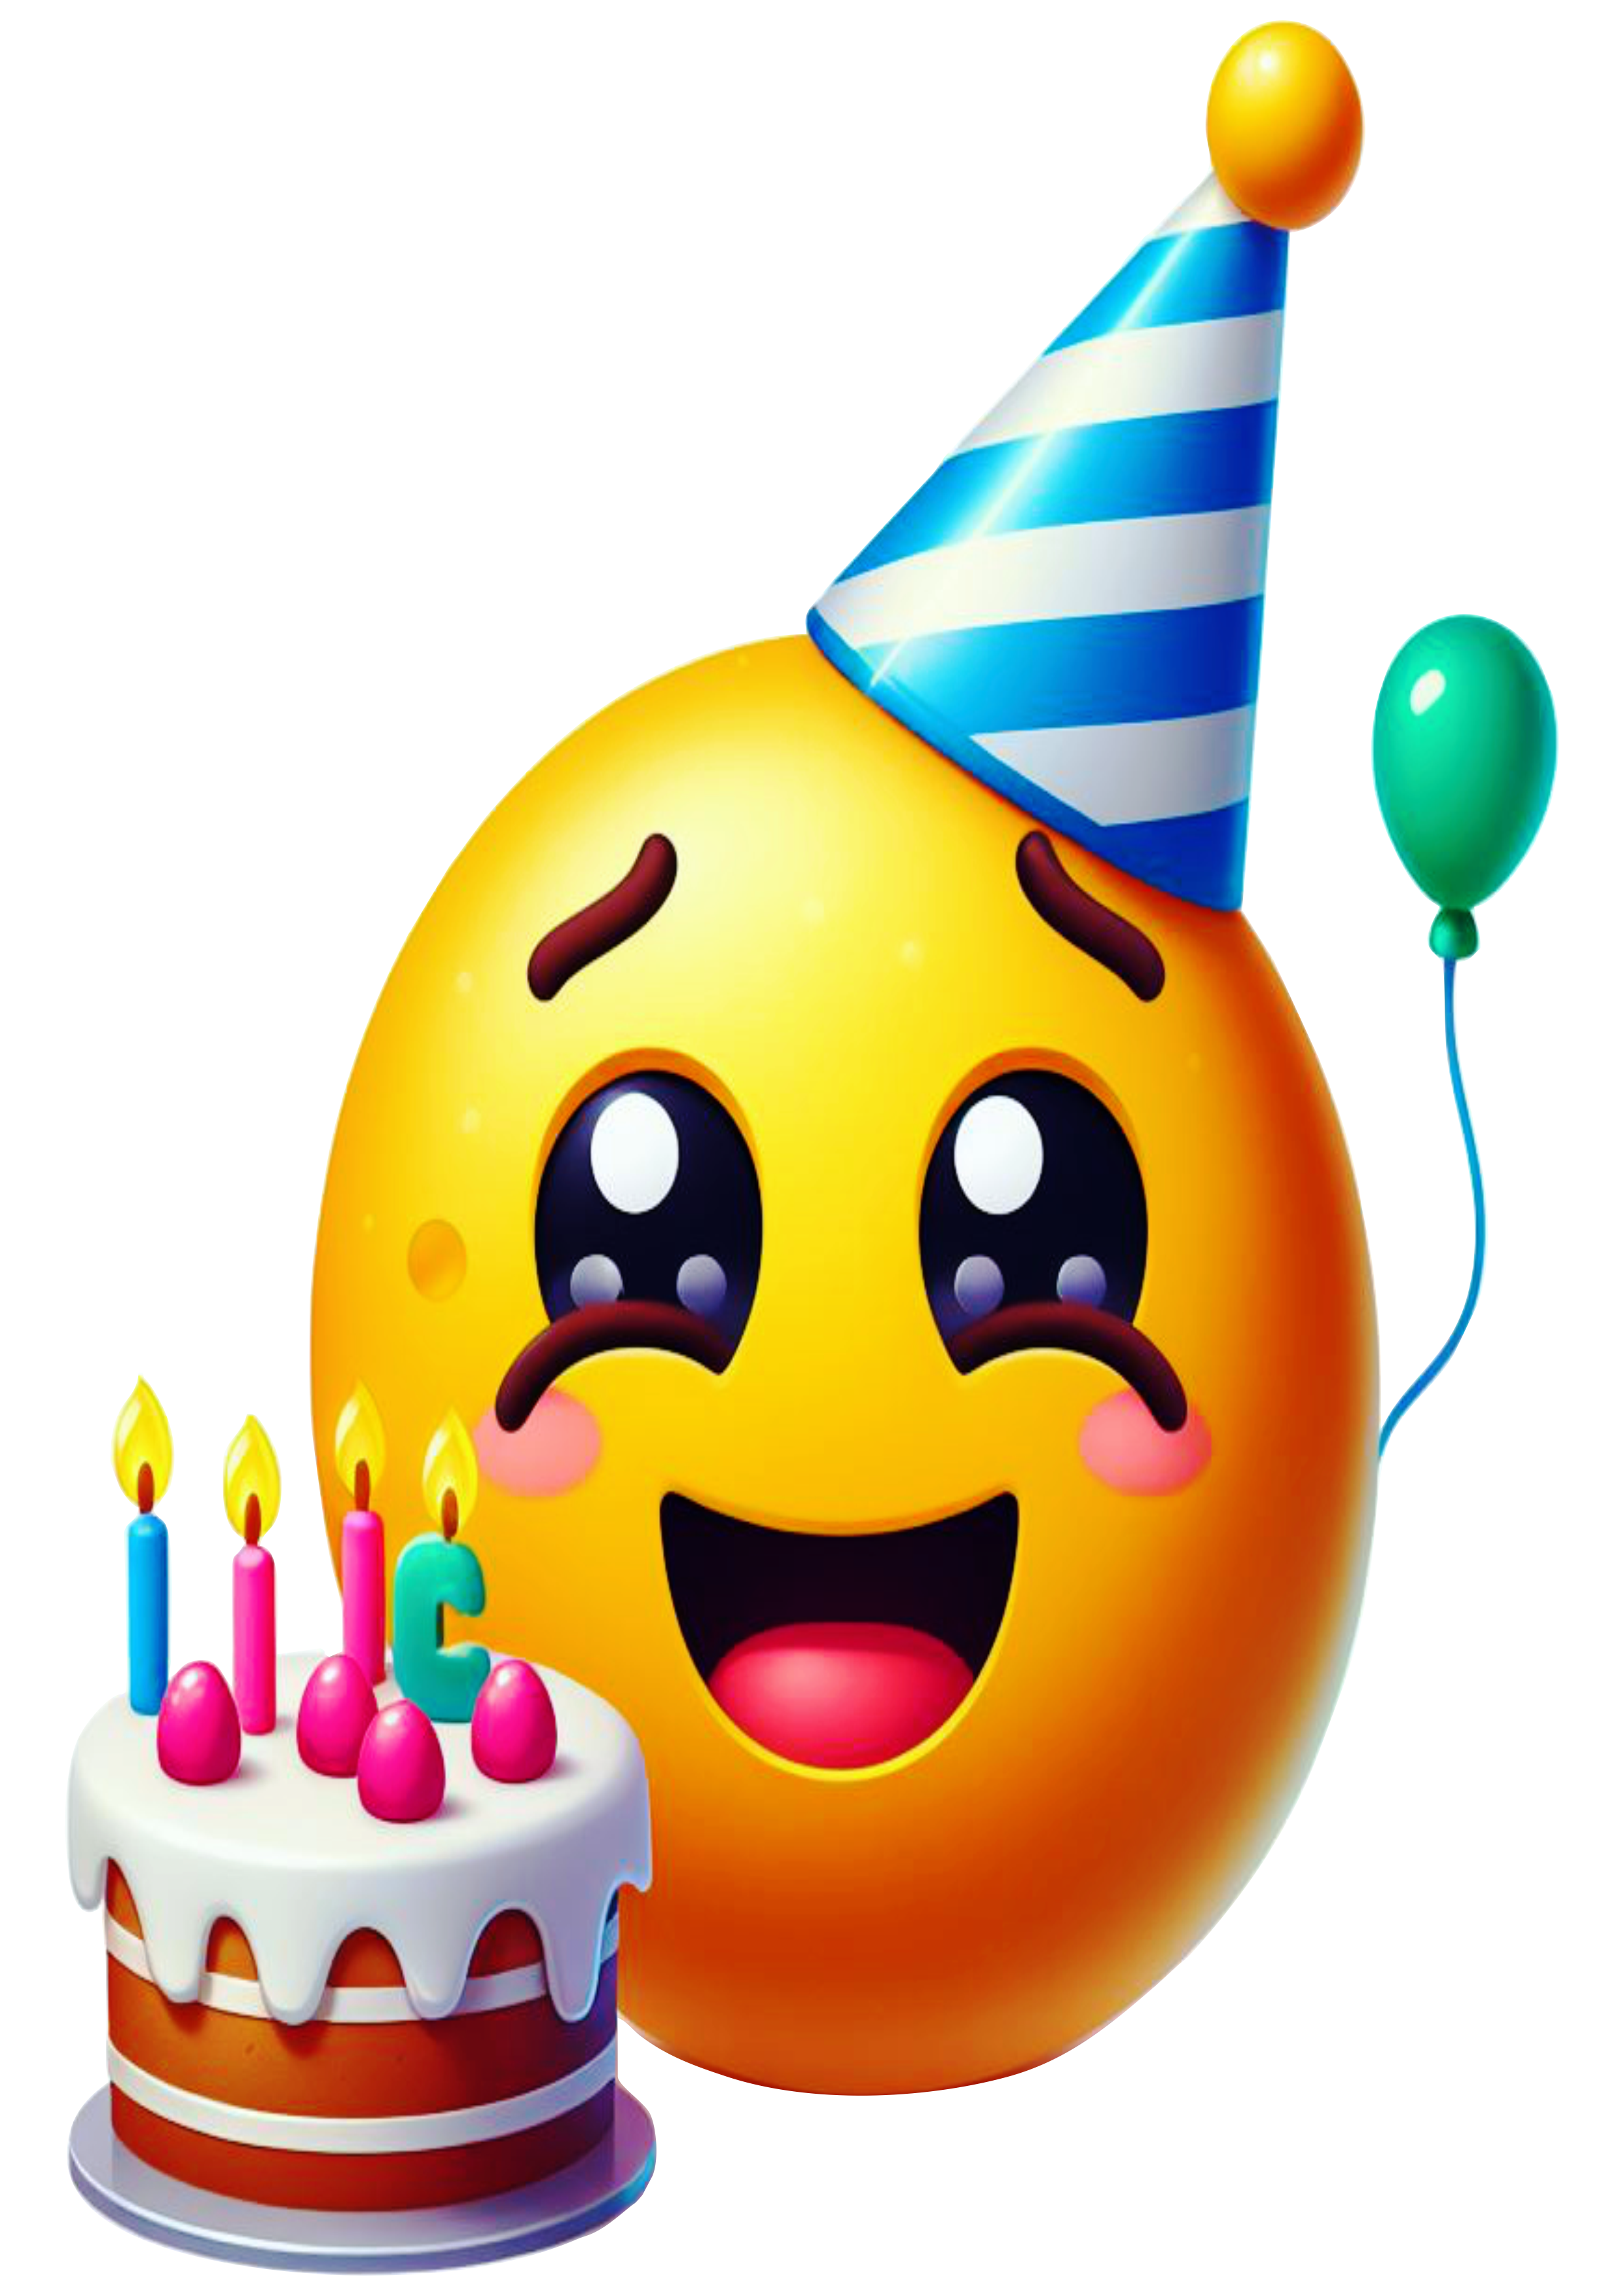 Feliz aniversário Emoji bolo parabéns figurinha engraçada whatsapp instagram facebook redes sociais artes gráficas ilustração png